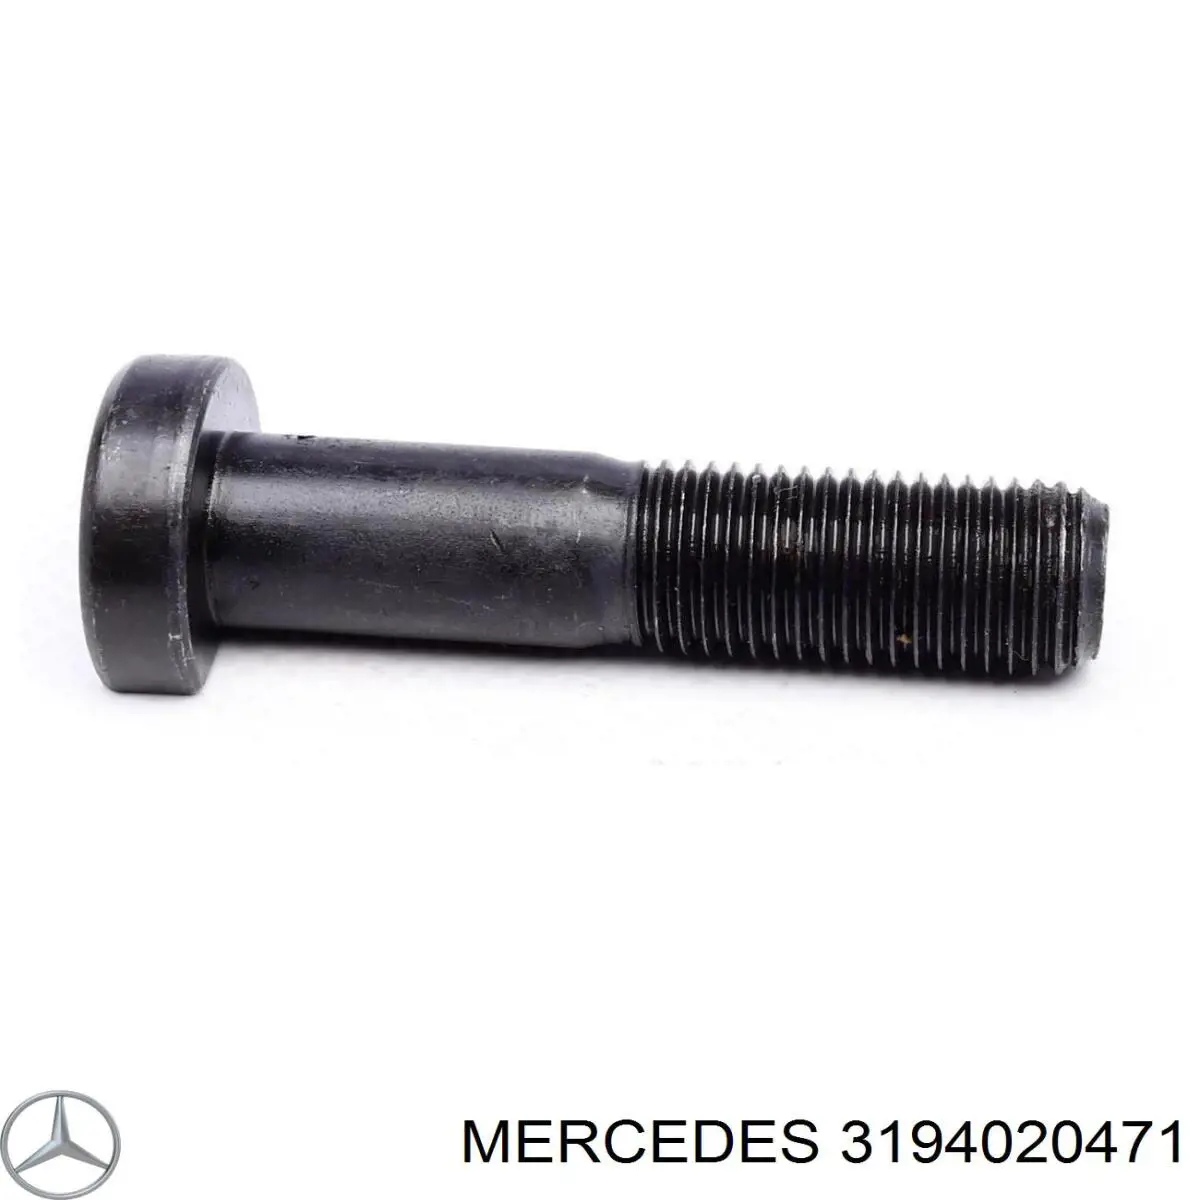 3194020471 Mercedes tornillo de rueda